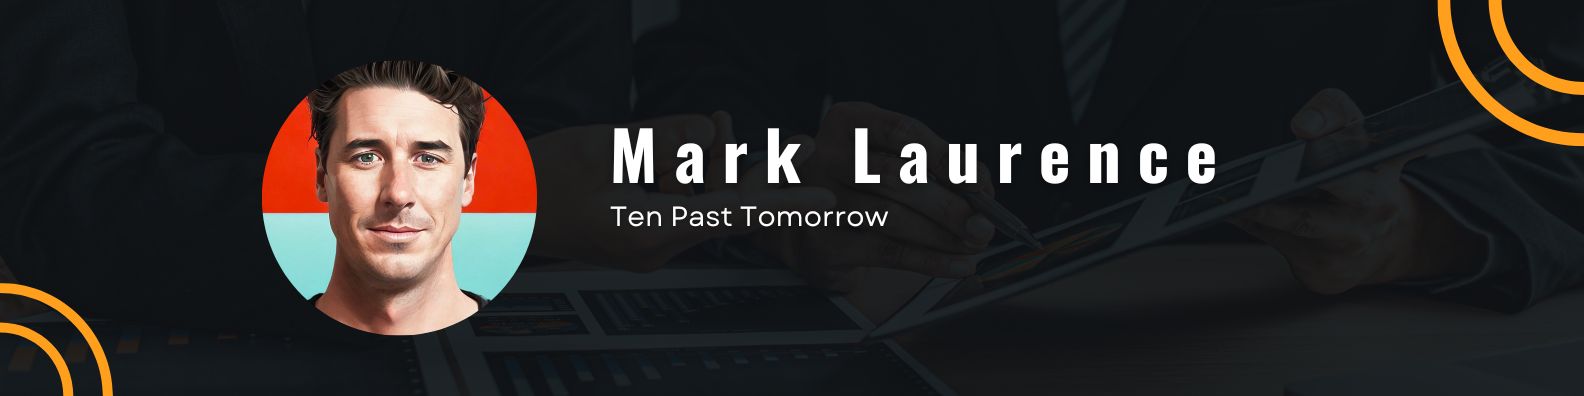 Mark Laurence - Ten Past Tomorrow